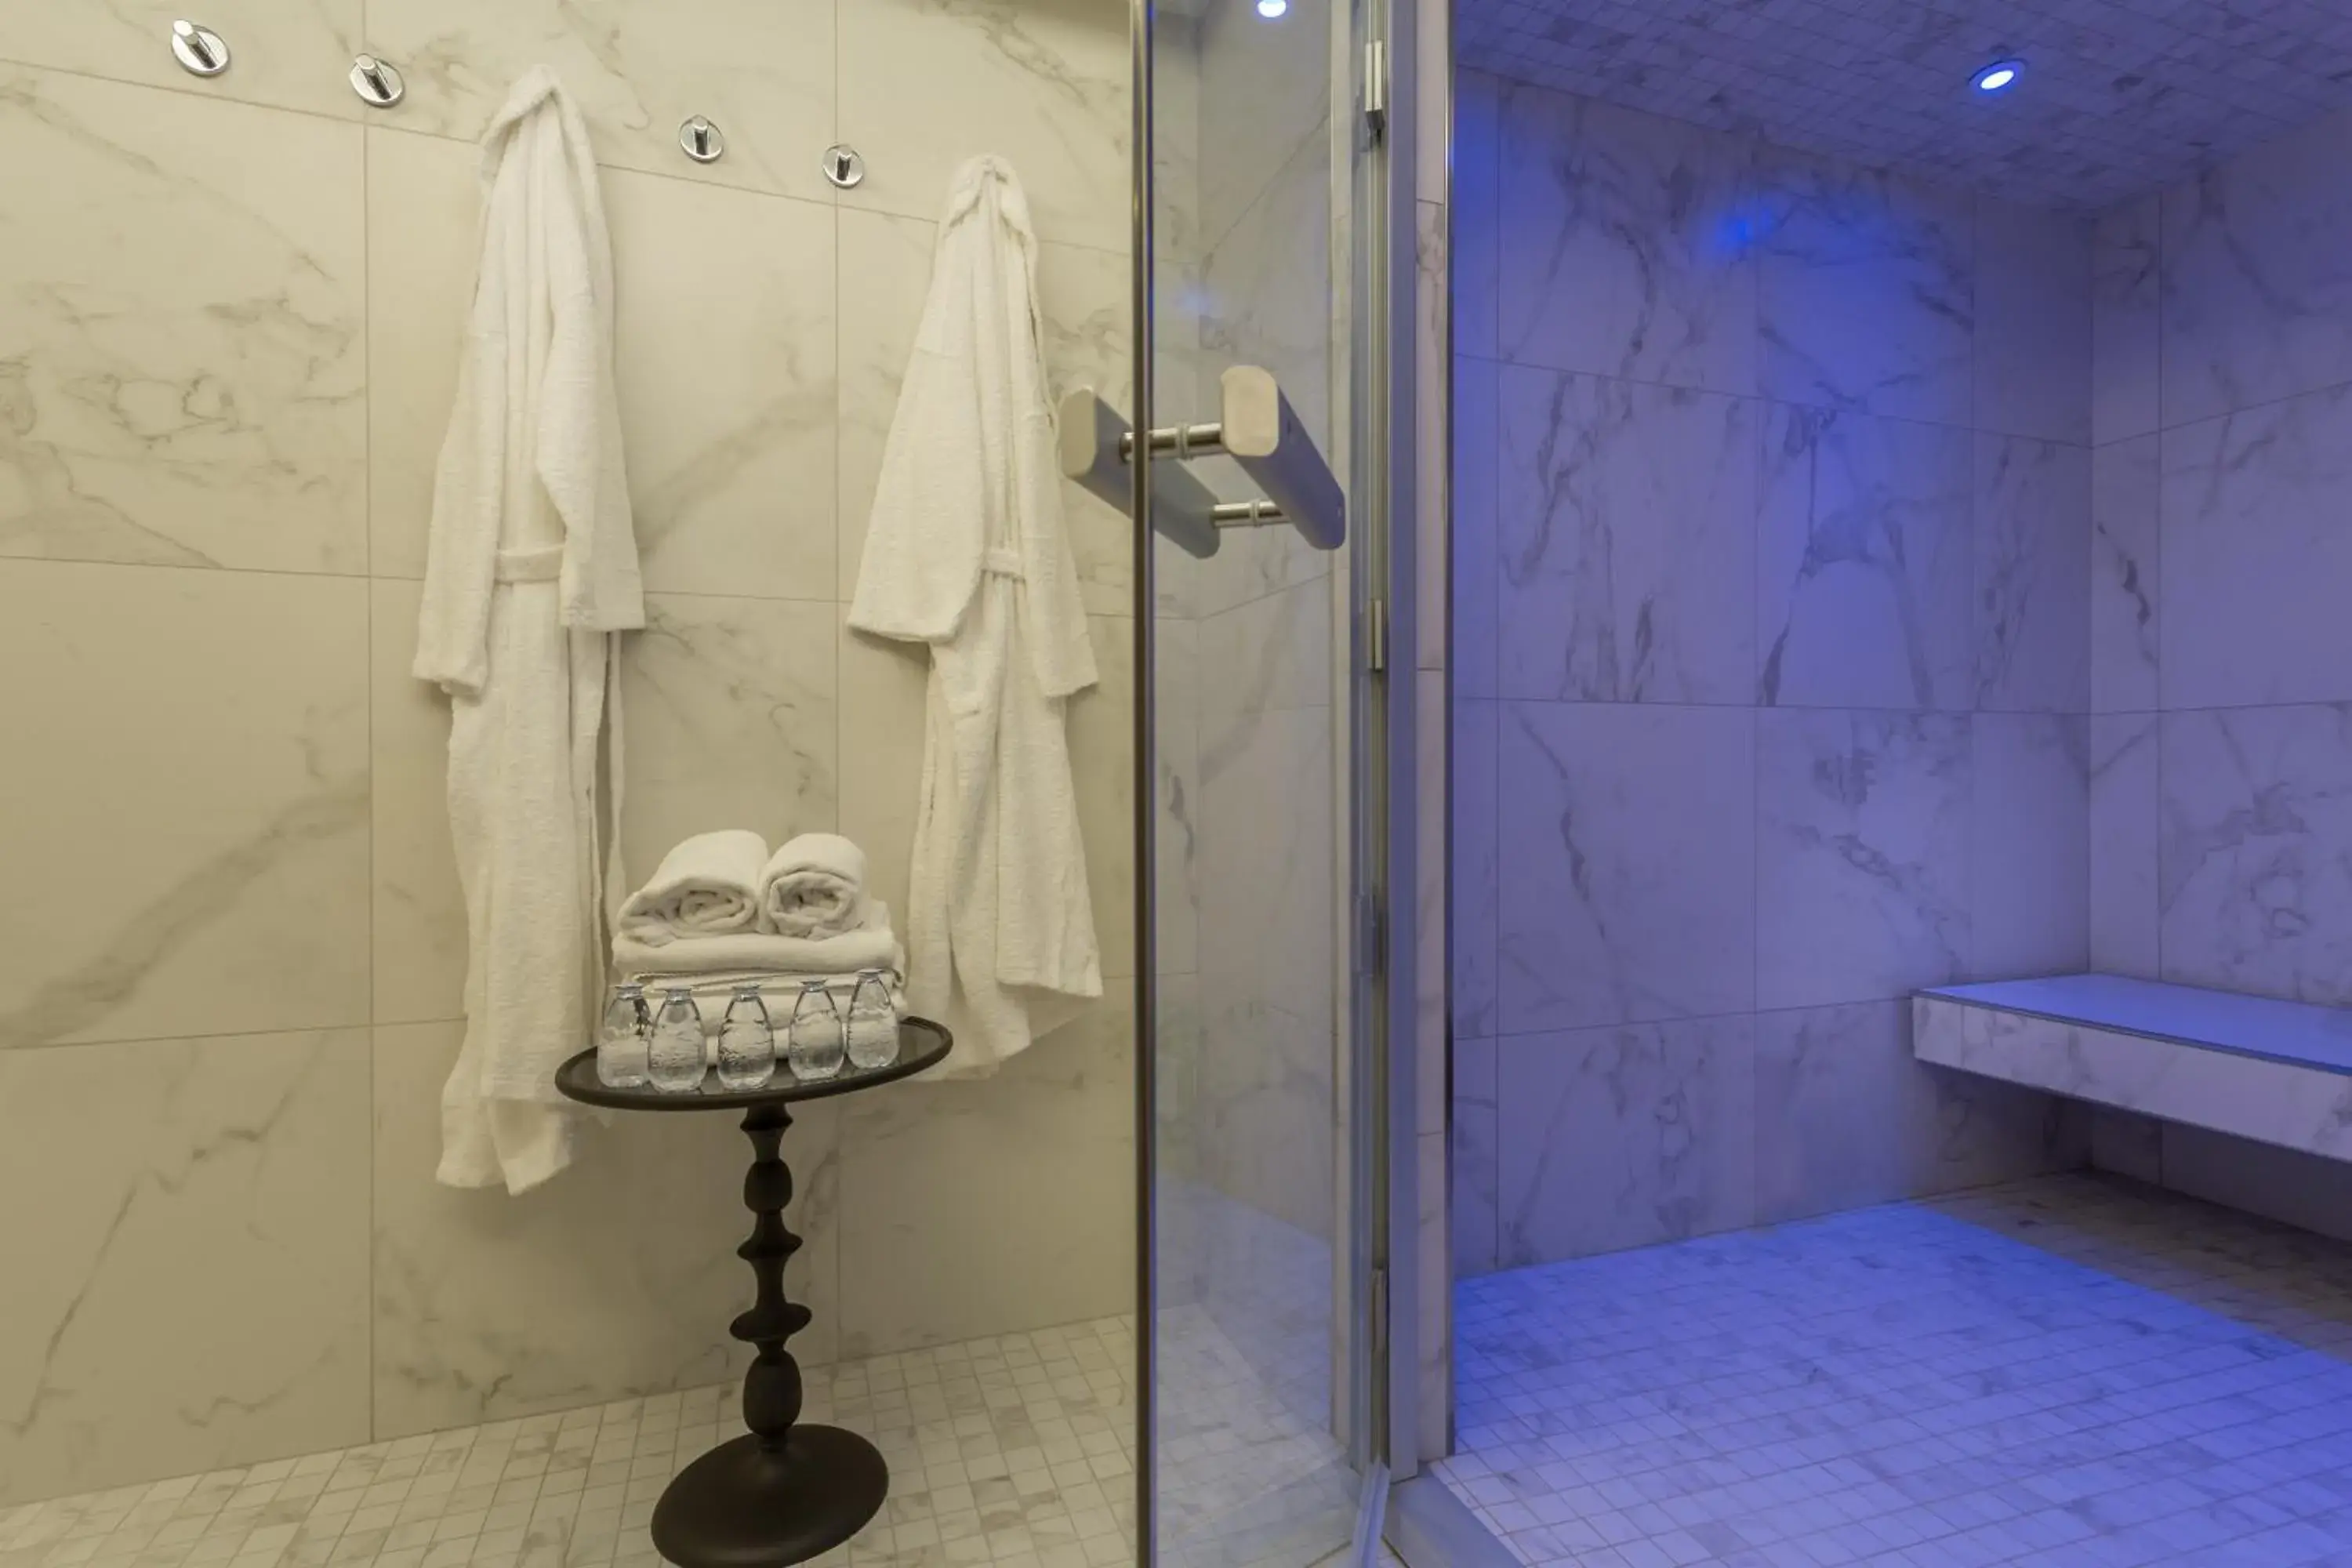 Fitness centre/facilities, Bathroom in Hotel La Comtesse